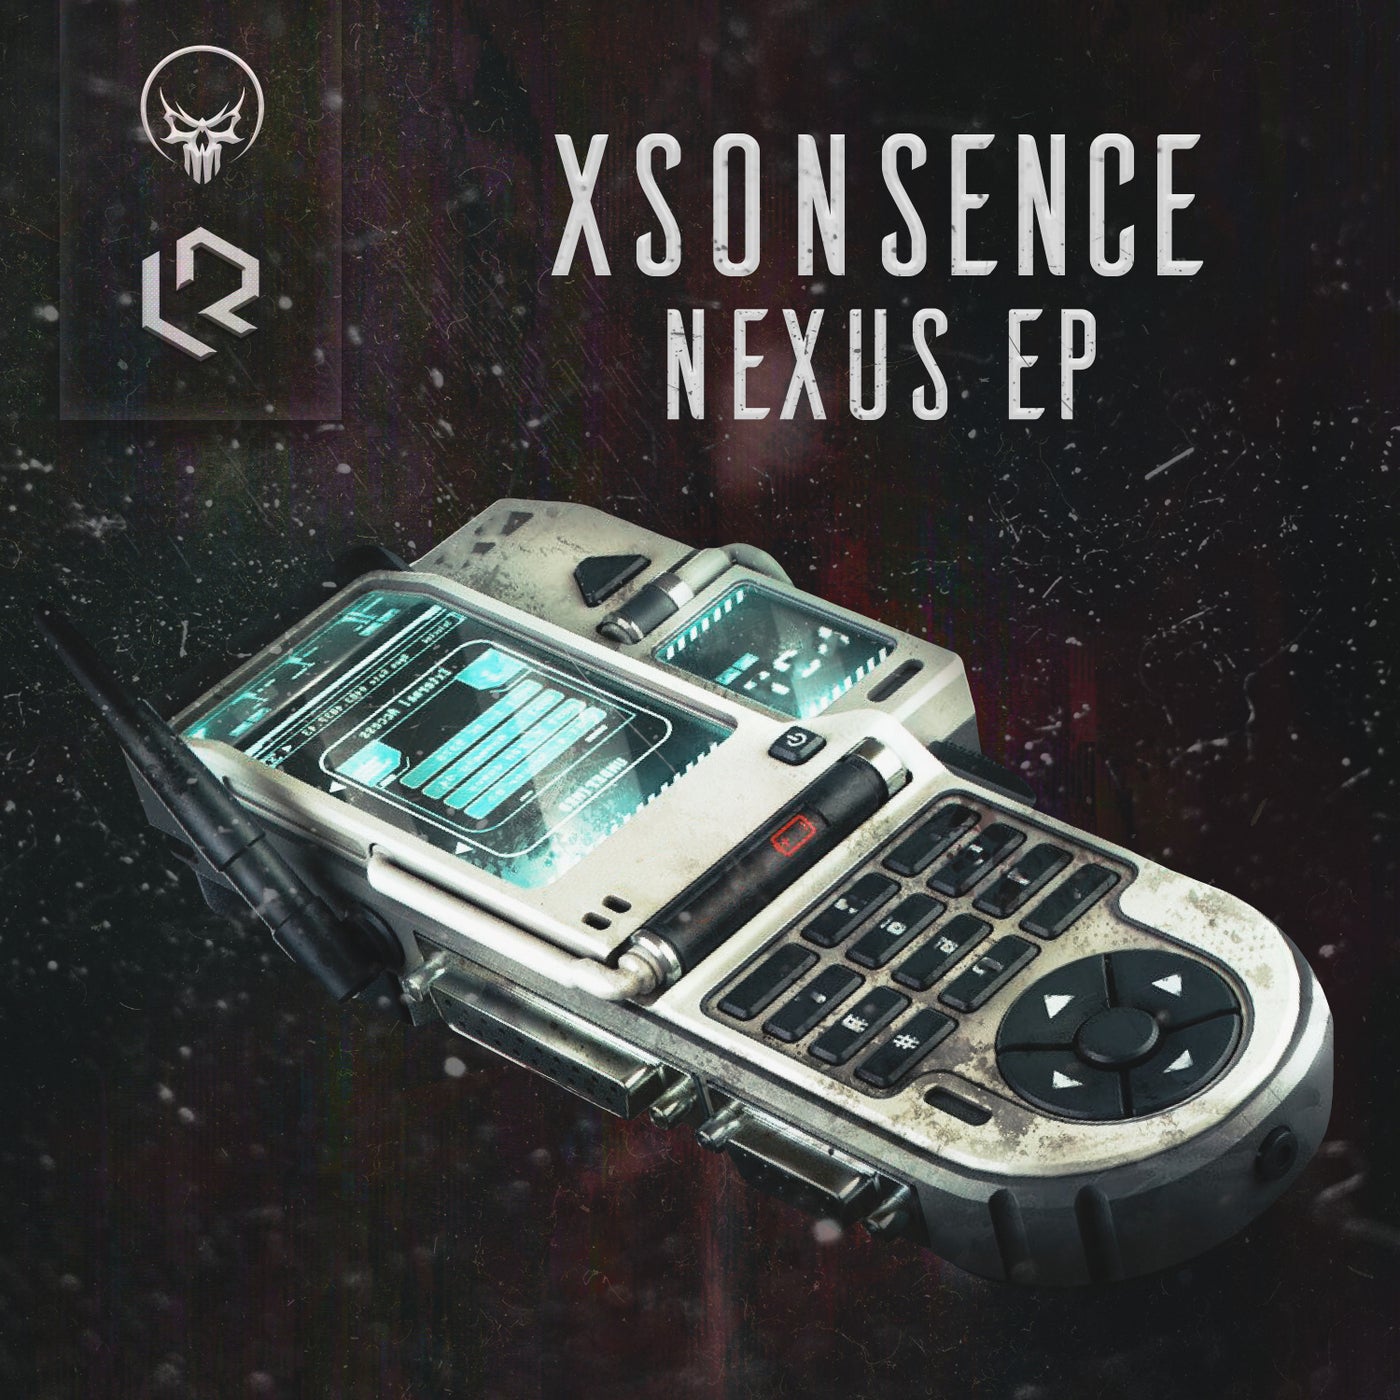 Nexus EP